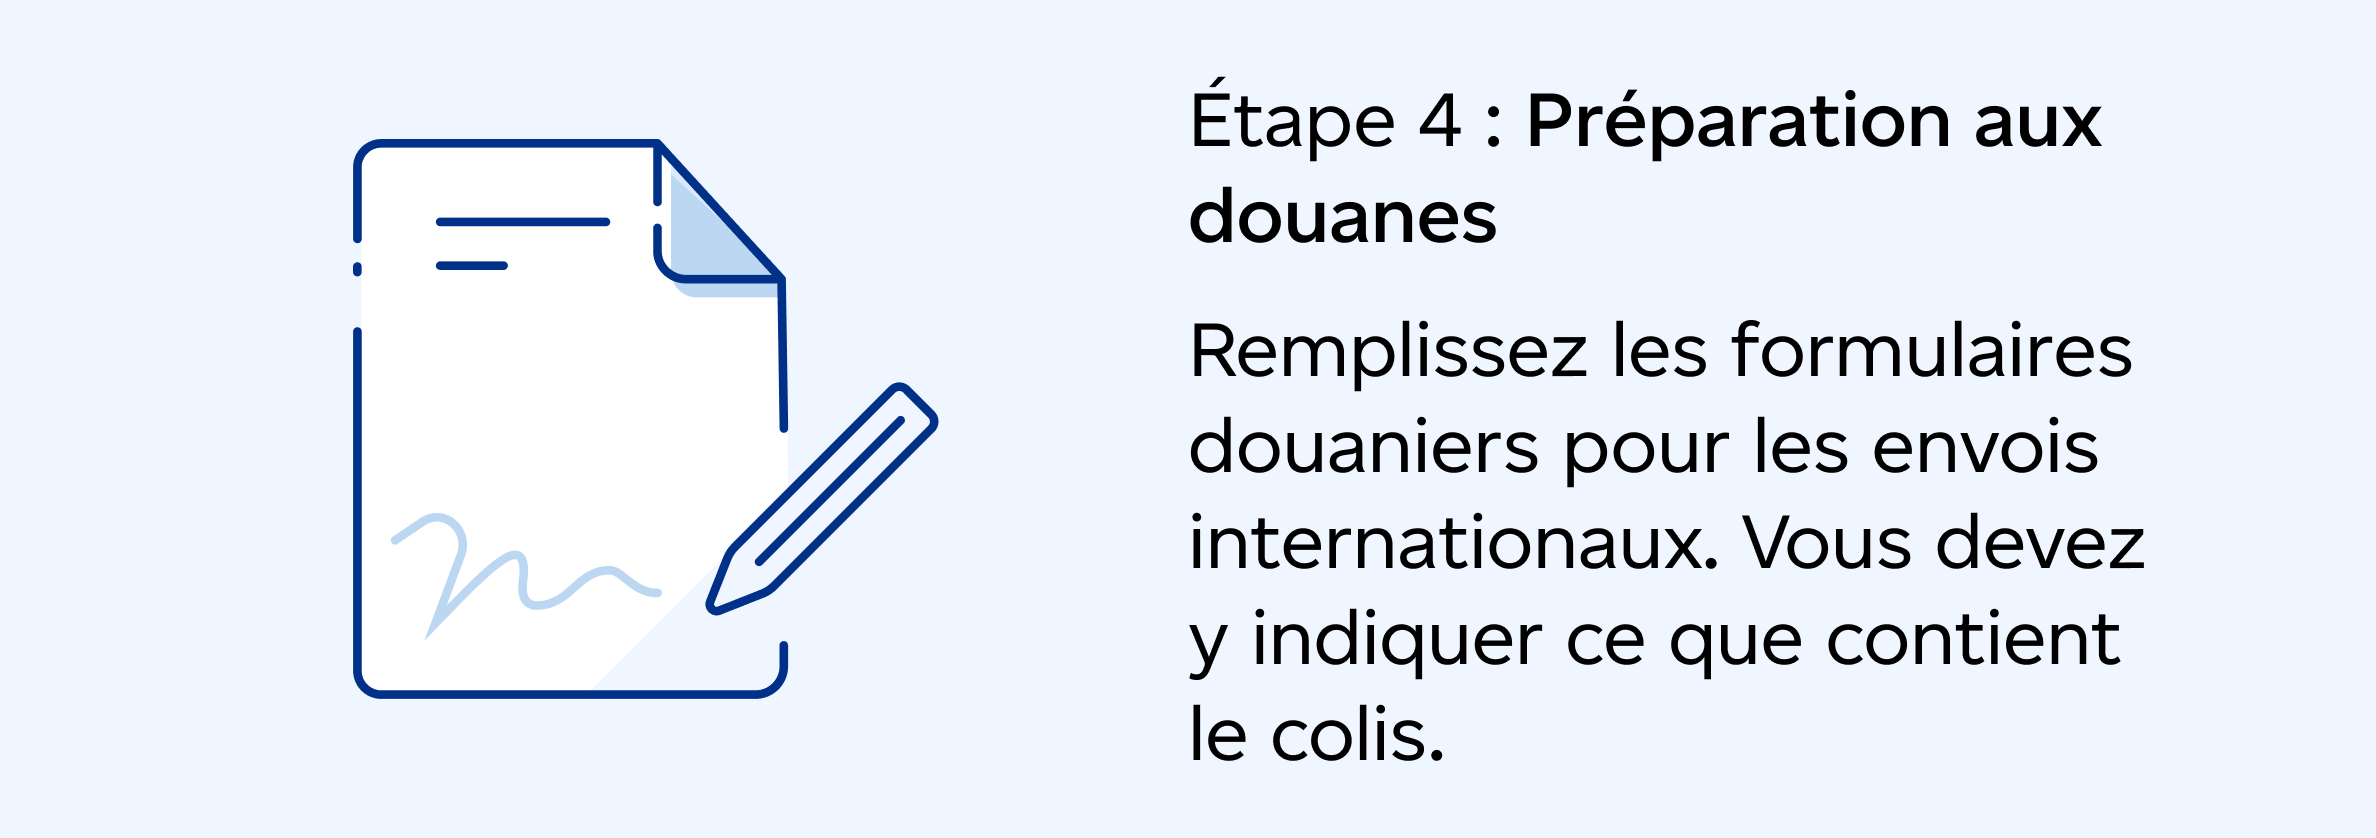 Étape 4 : Préparation aux douanes : Remplissez les formulaires douaniers pour les envois internationaux. Vous devez y indiquer ce que contient le colis.